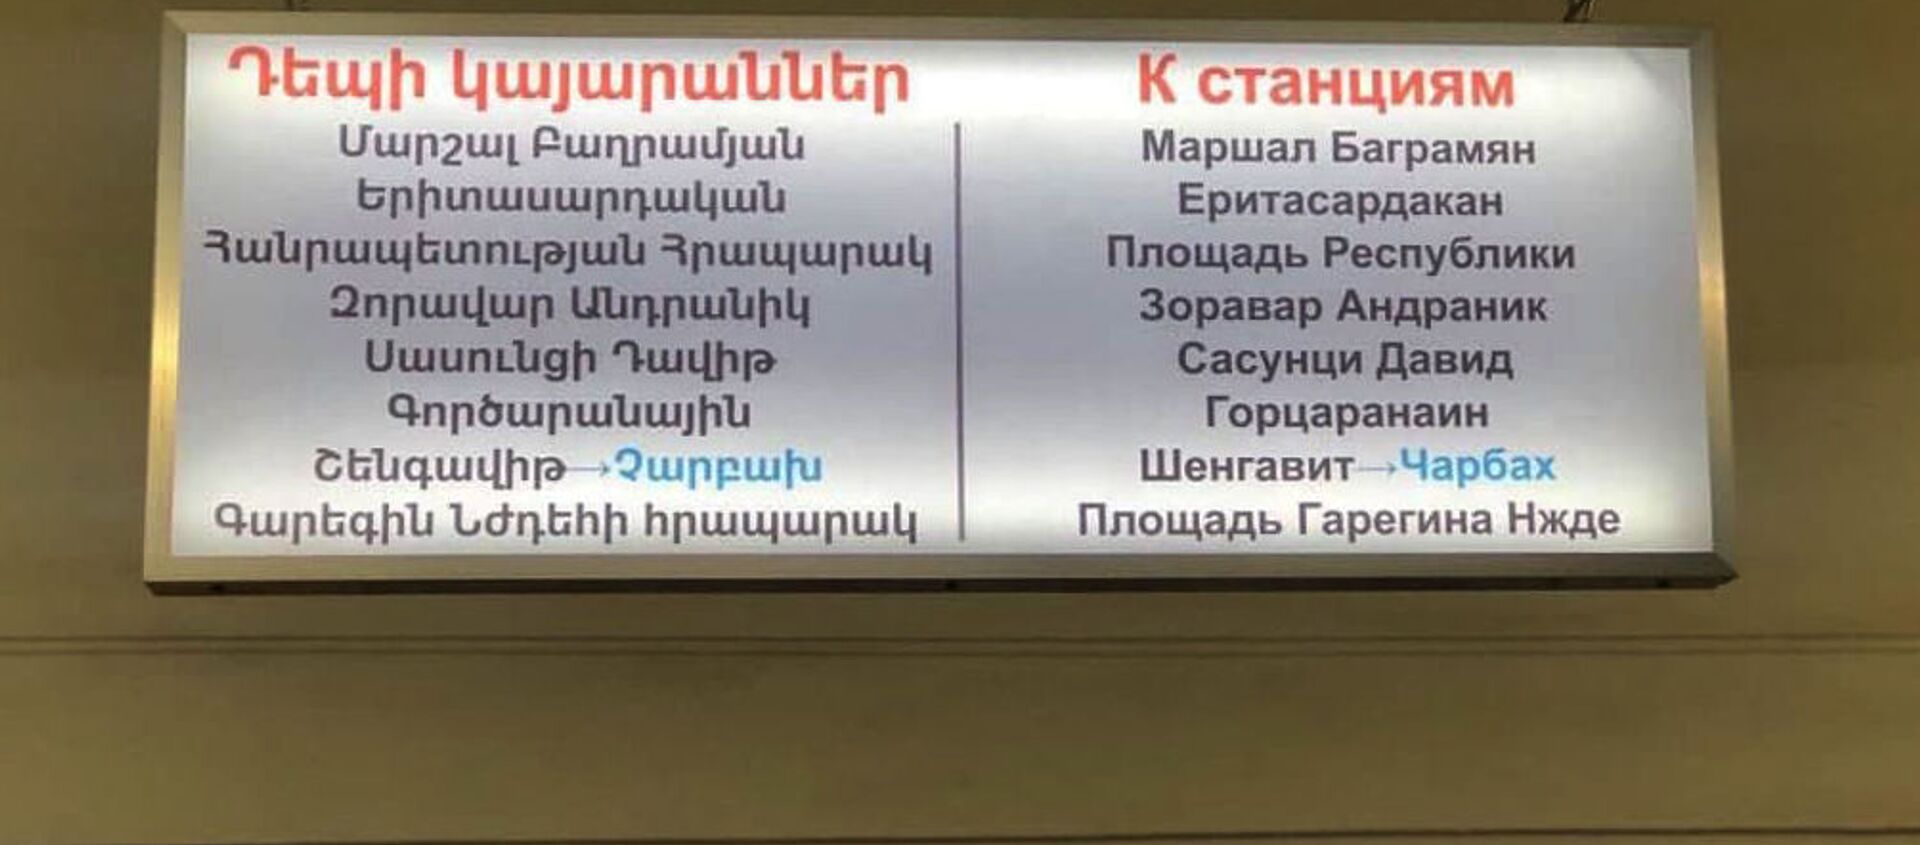 Вывеска станций в столичном метро  - Sputnik Армения, 1920, 29.04.2021